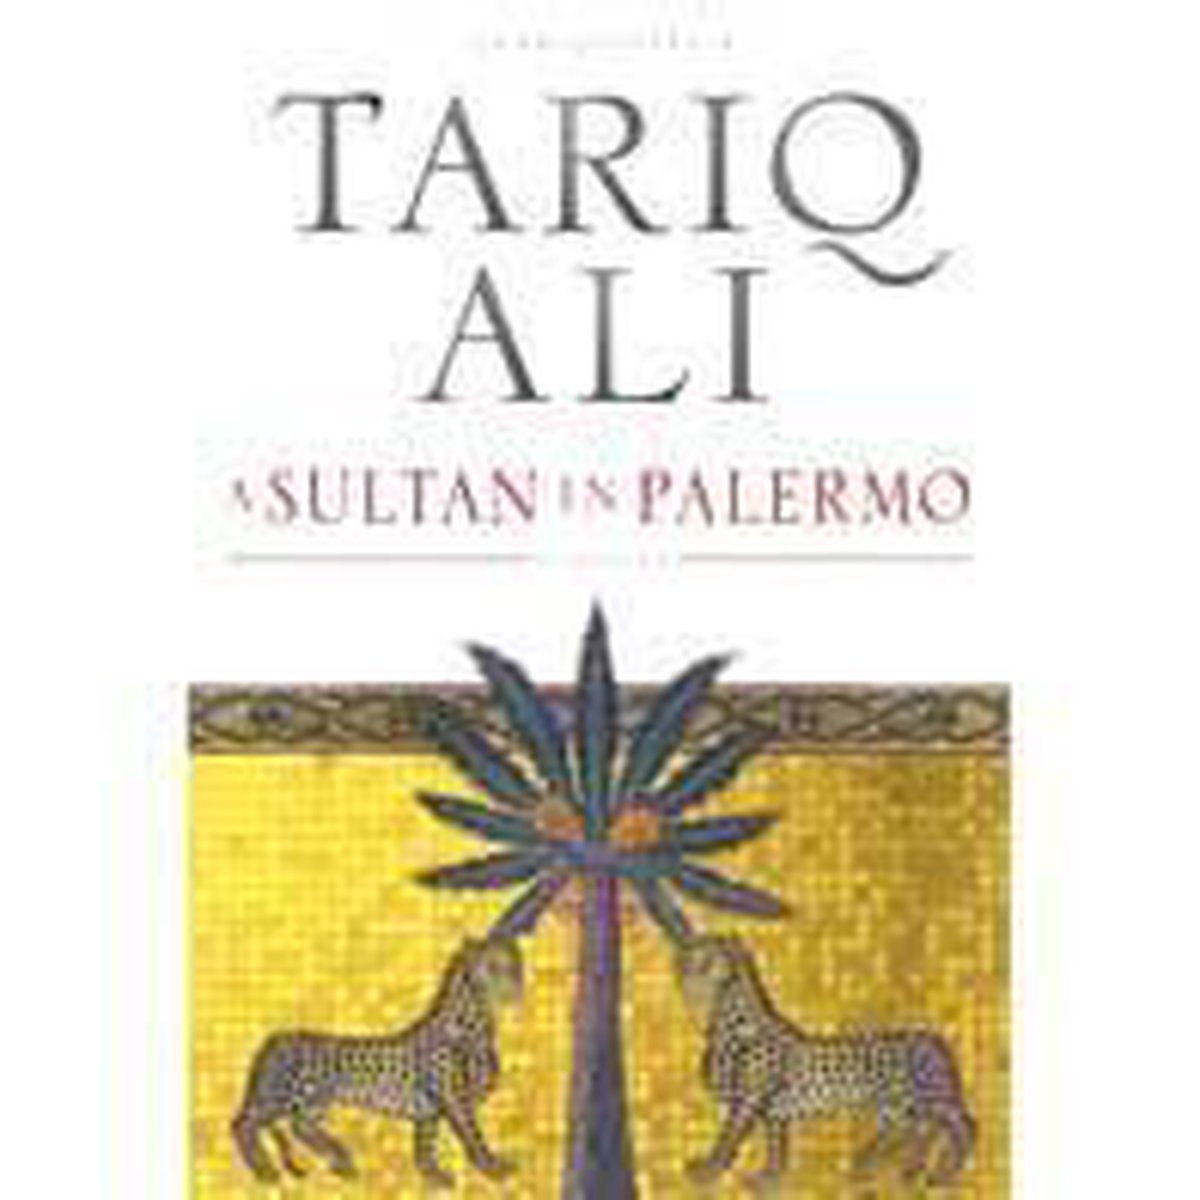 Sultan In Palermo